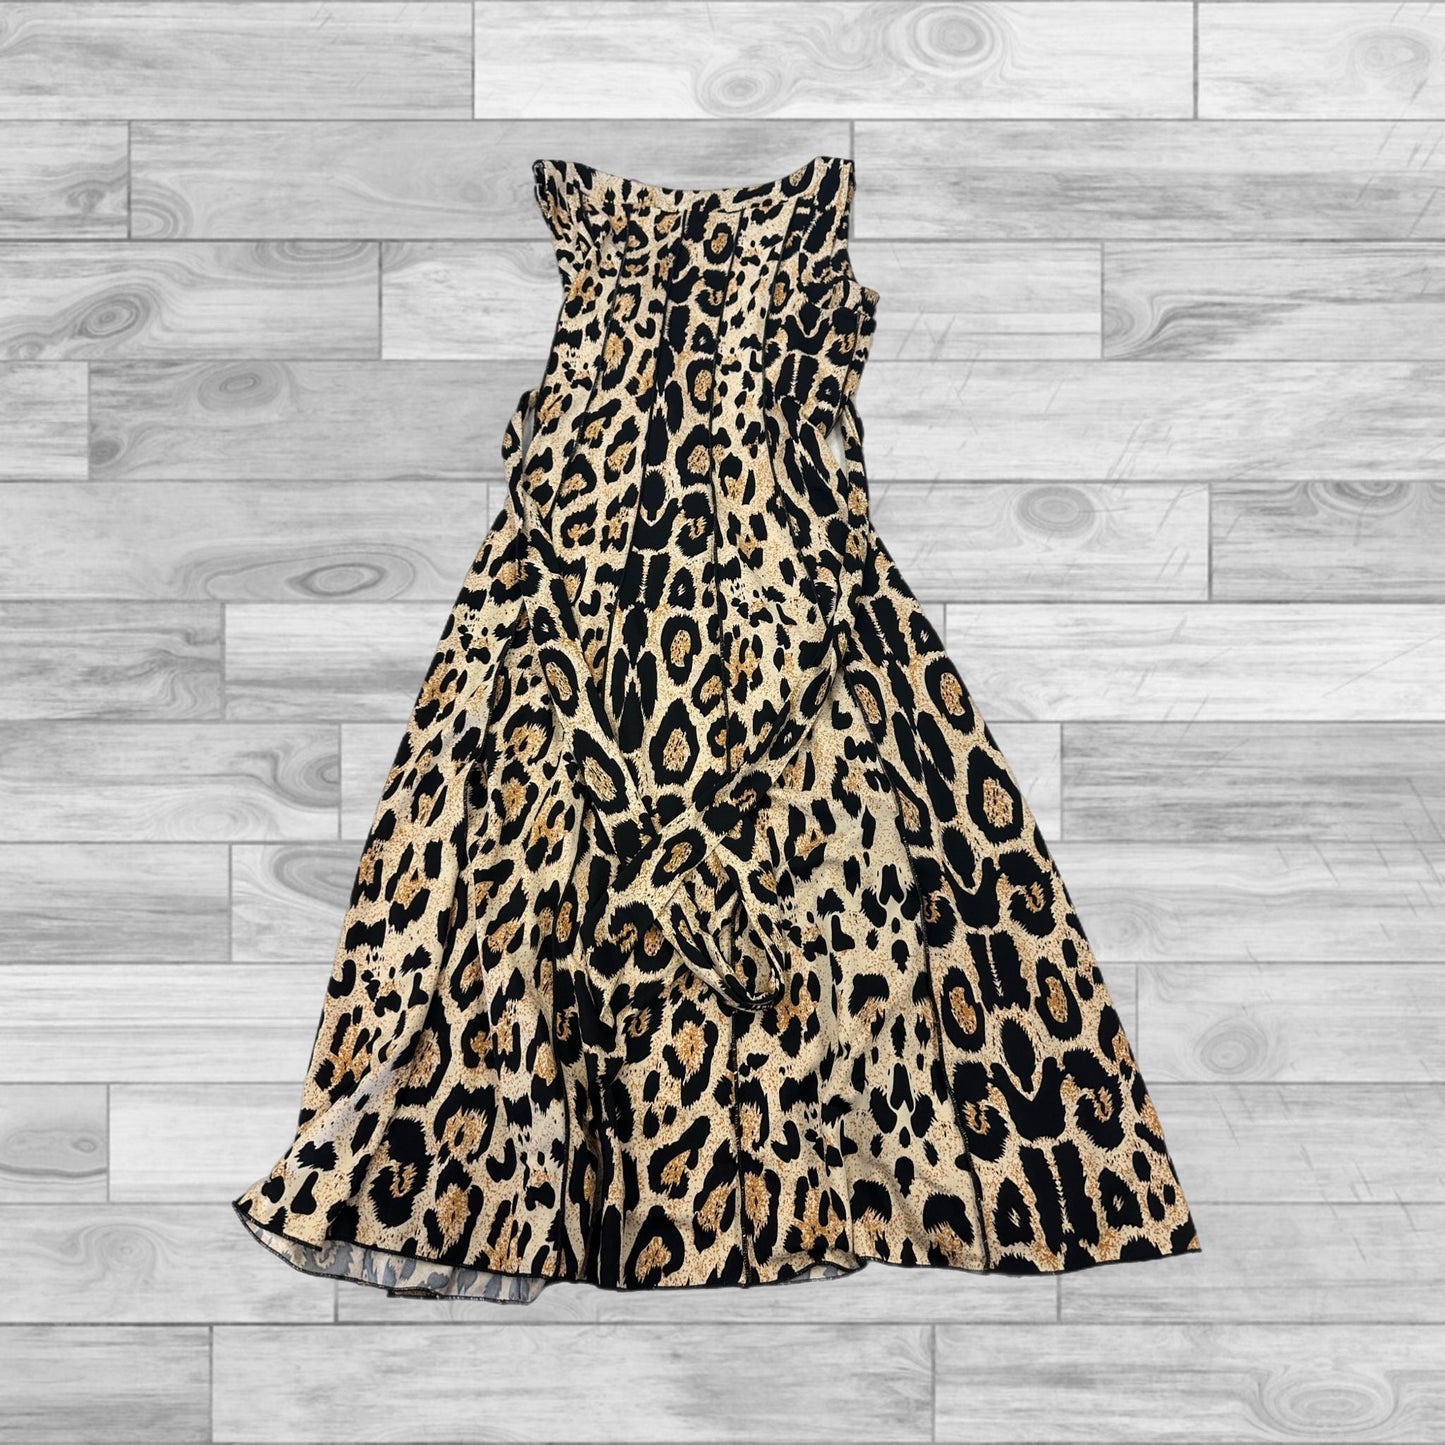 Leopard Print Dress Casual Short Voir Voir, Size 8